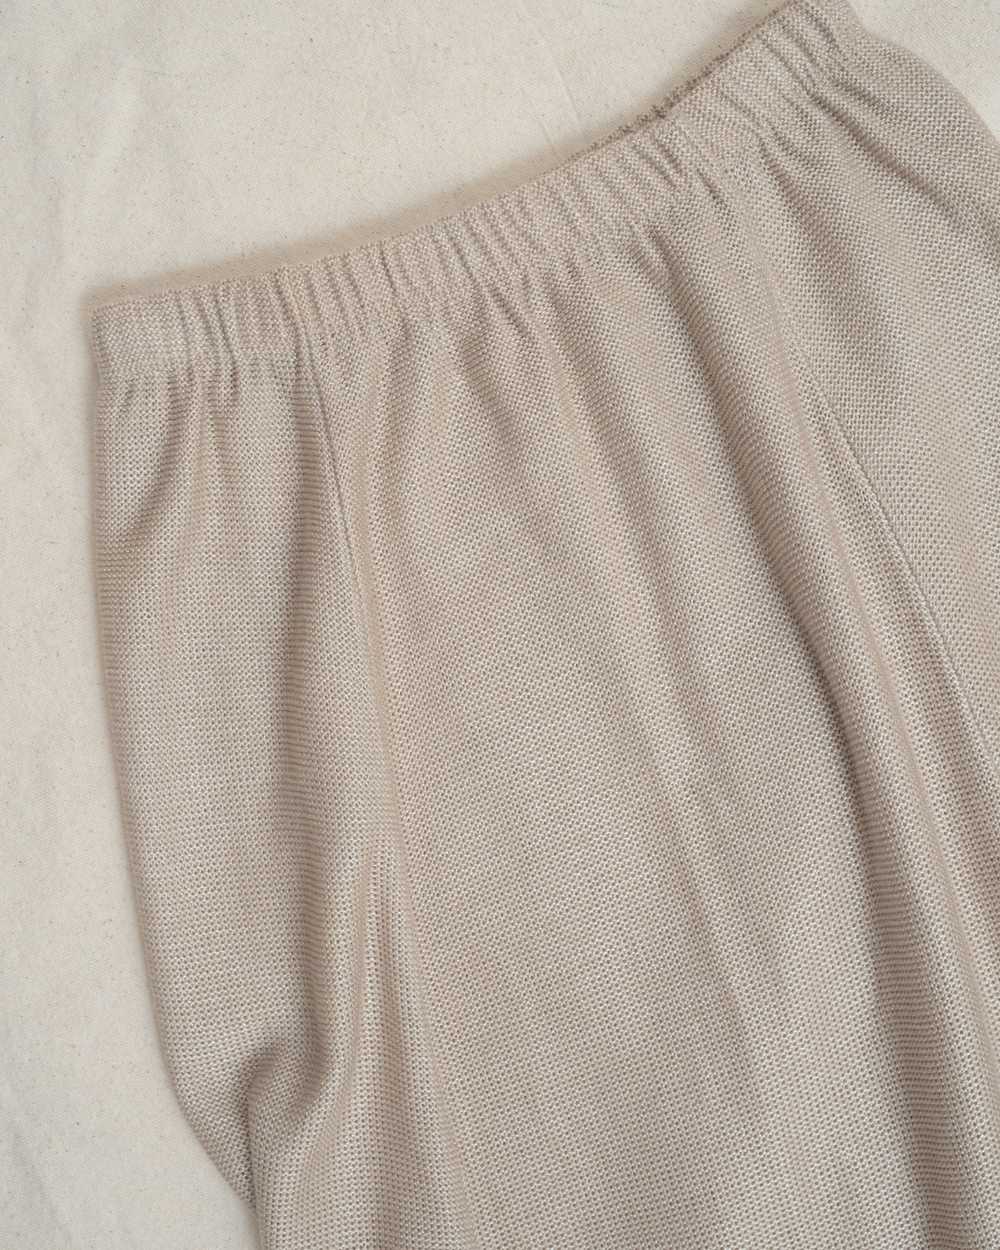 Vintage Beige Knit Skirt (S/M) - image 6